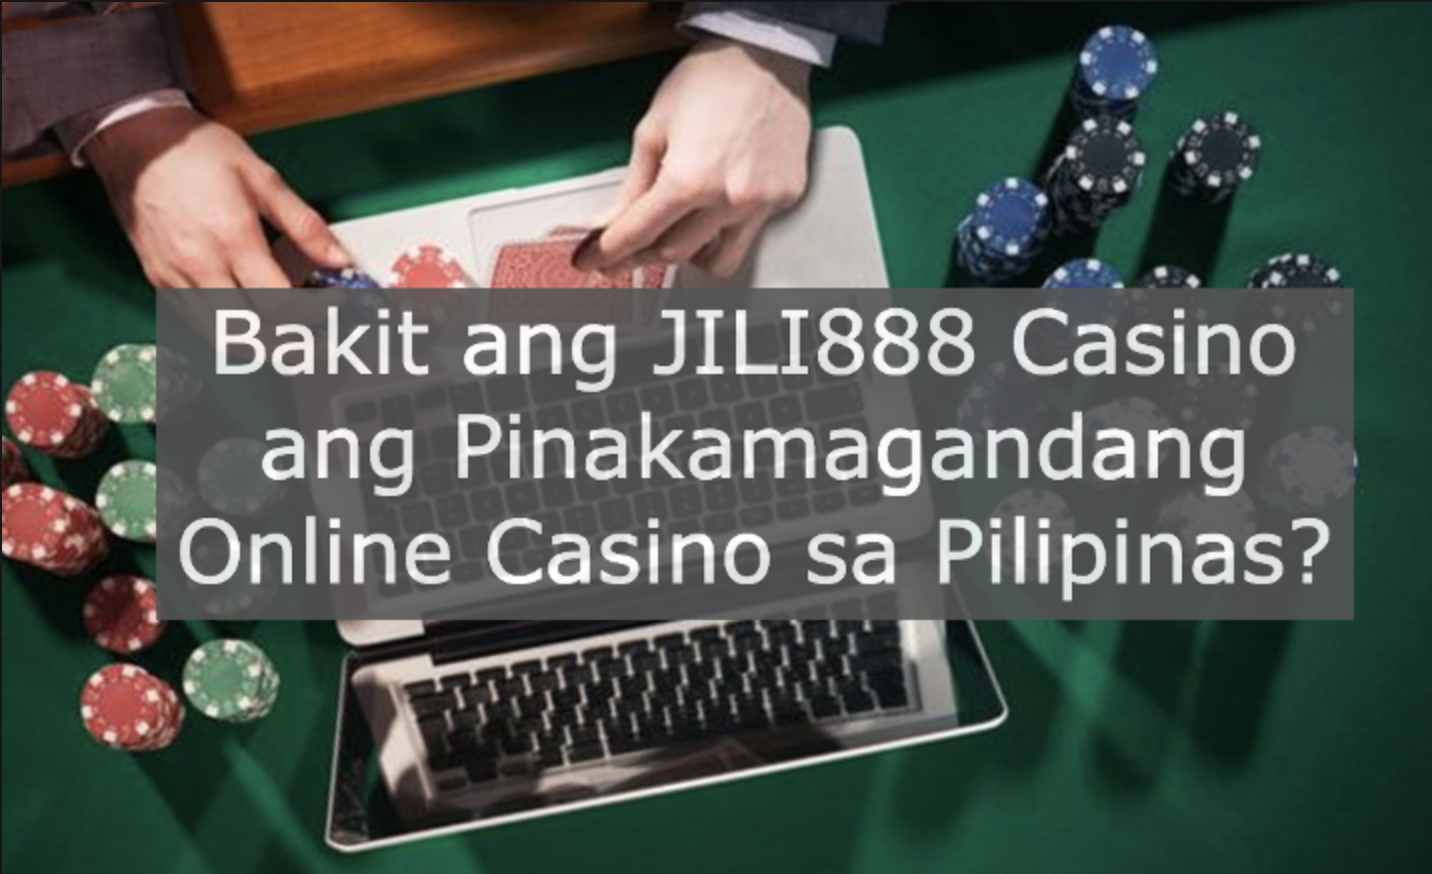 Bakit ang JILI888 Casino ang Pinakamagandang Online Casino sa Pilipinas?